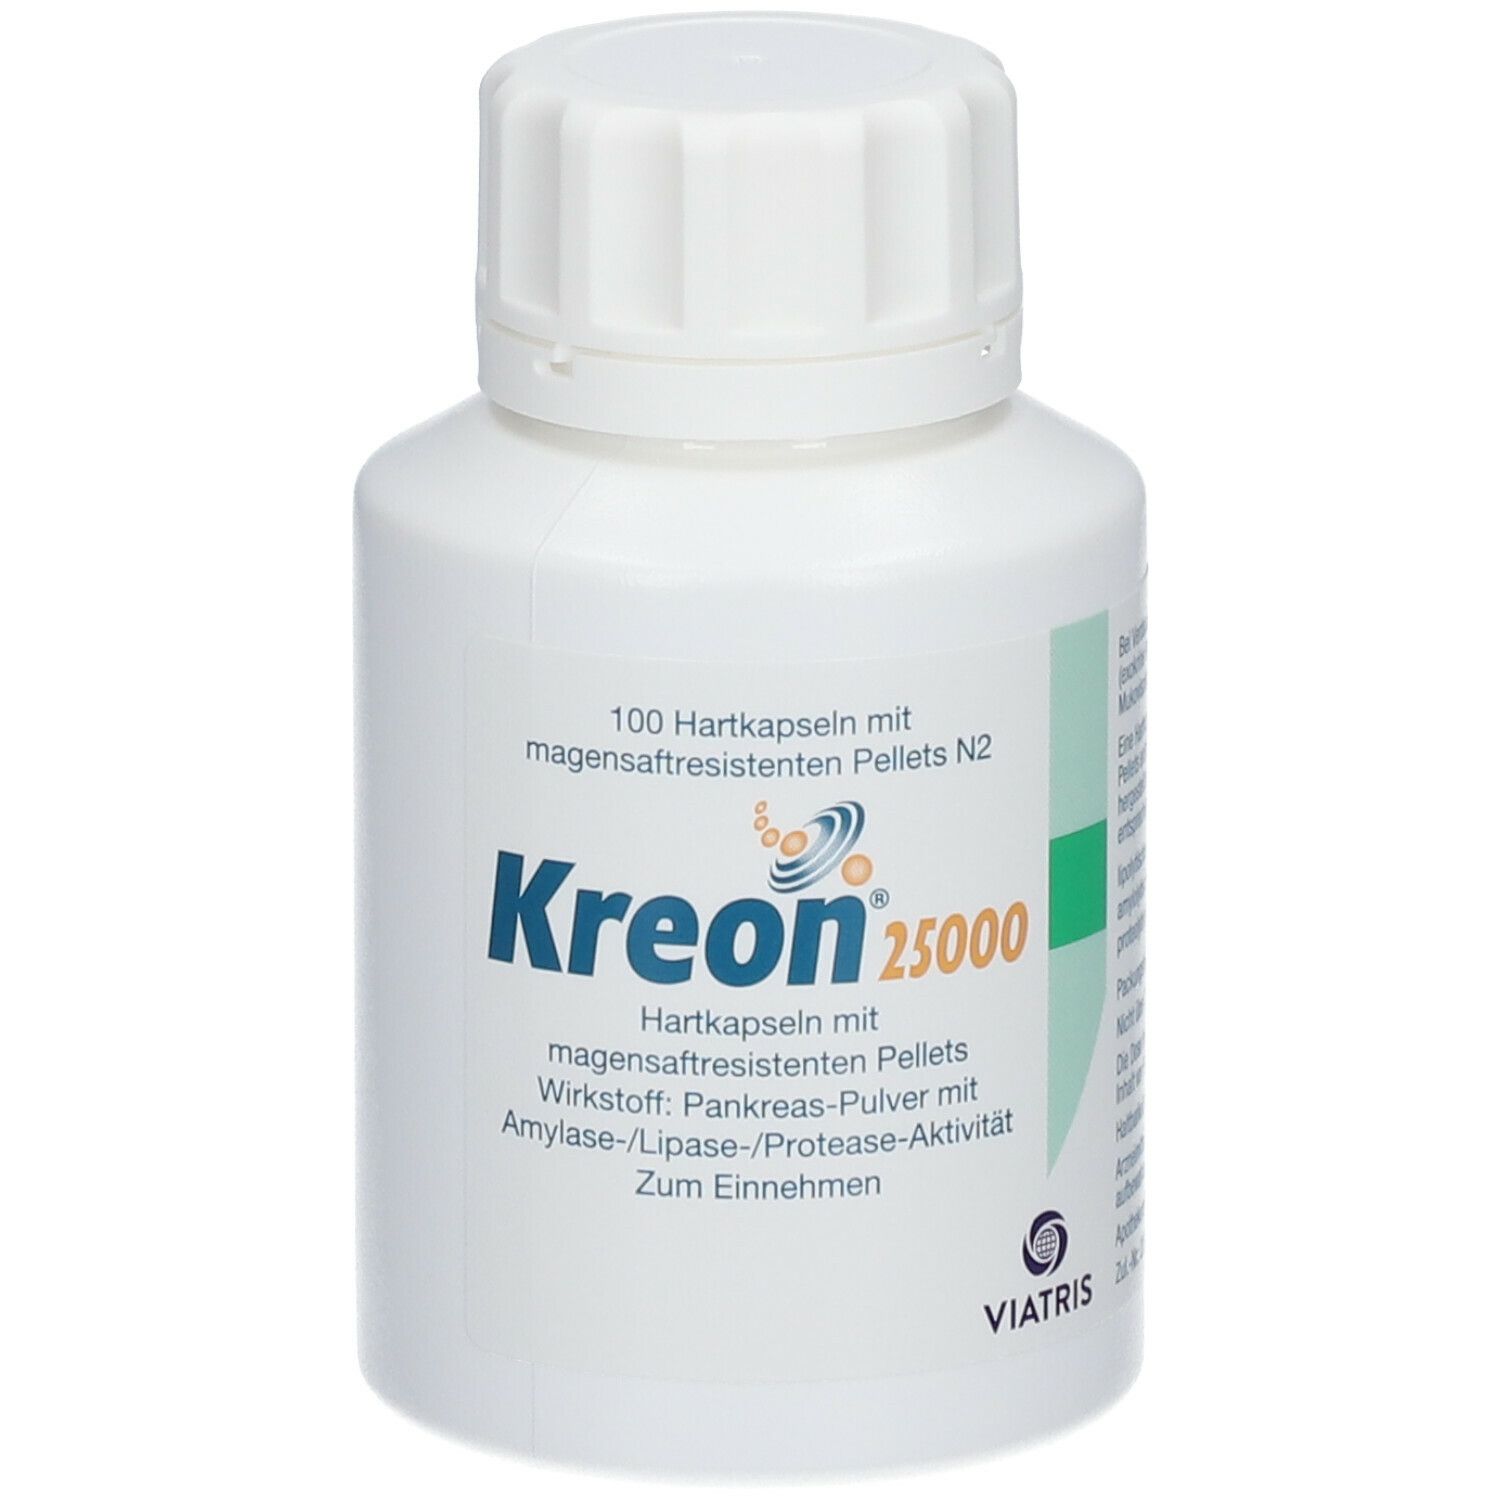 Kreon® 25 000 Kapseln